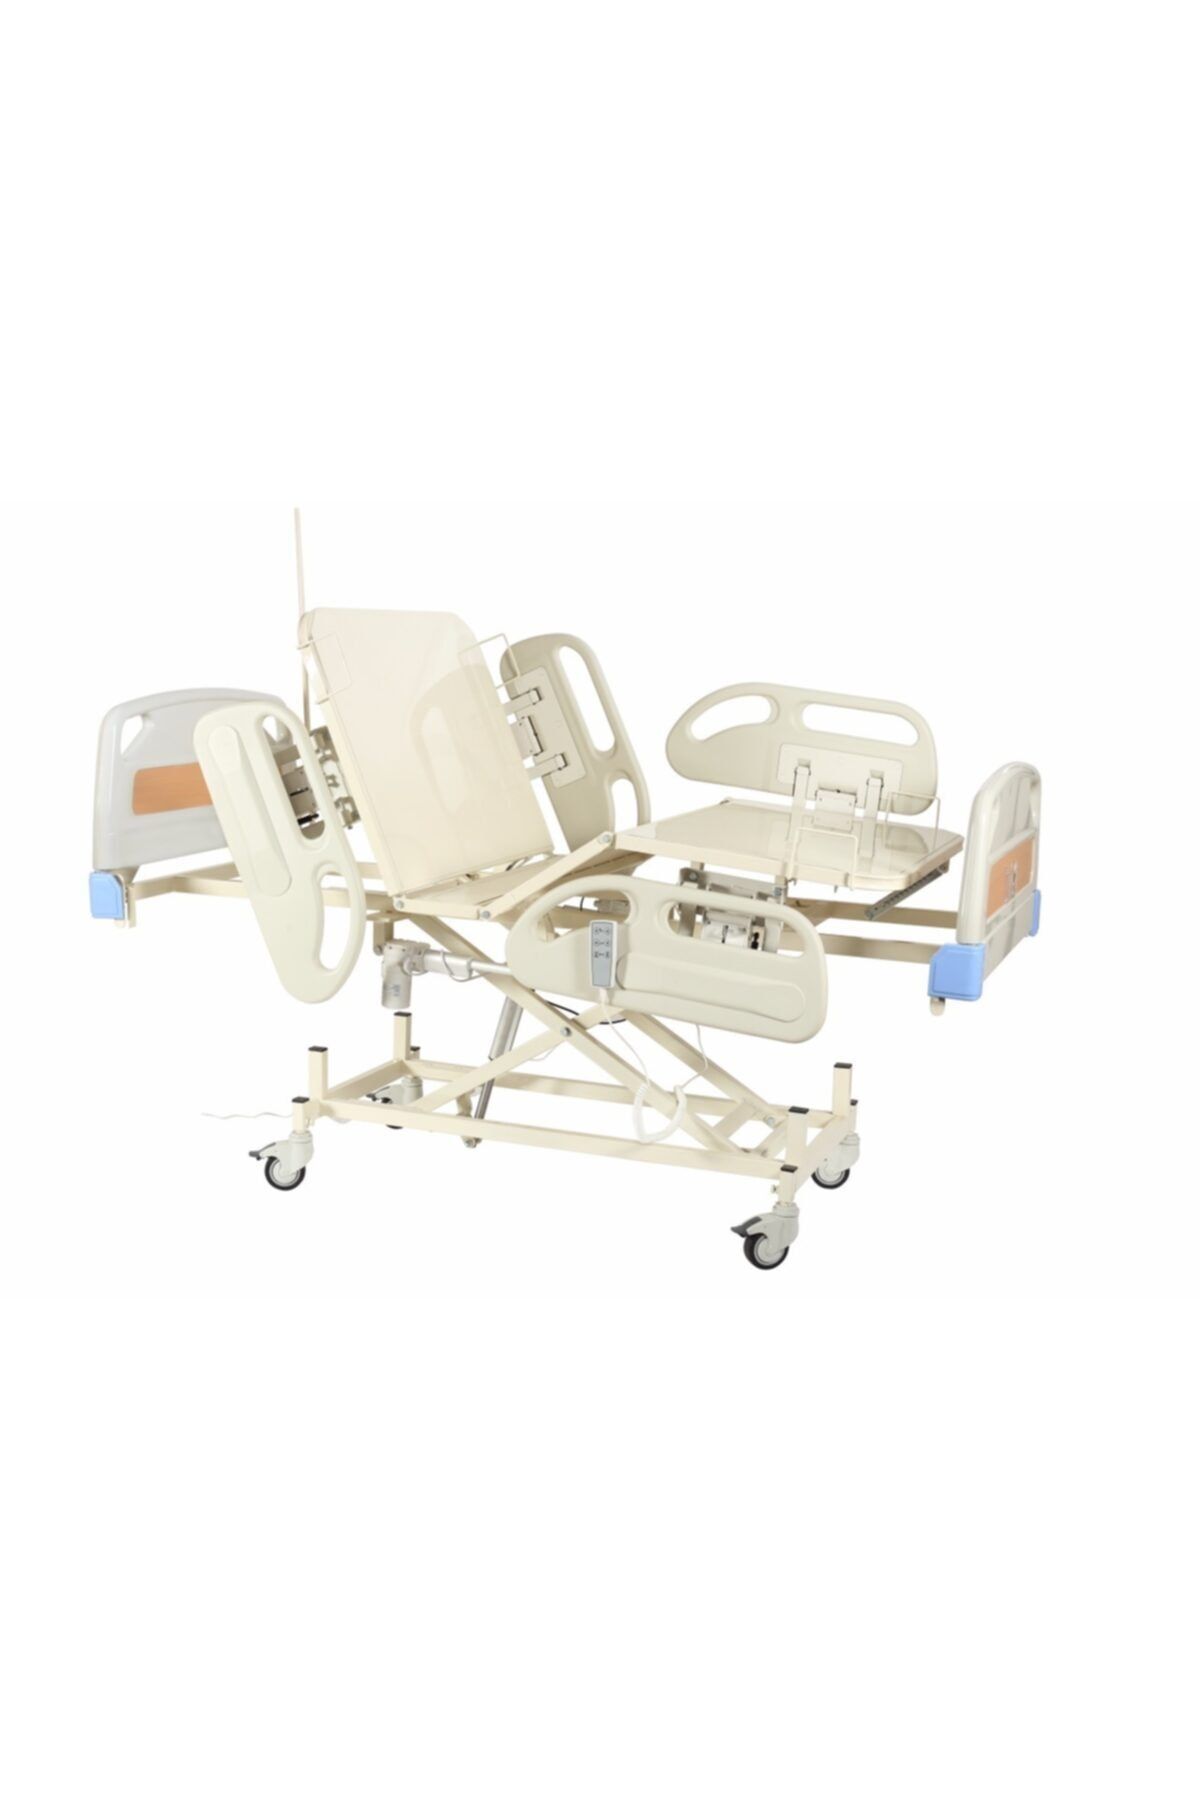 ACBED MEDİKAL 3 Motorlu (hareketli) Elektrikli Hasta Karyolası (yatağı)